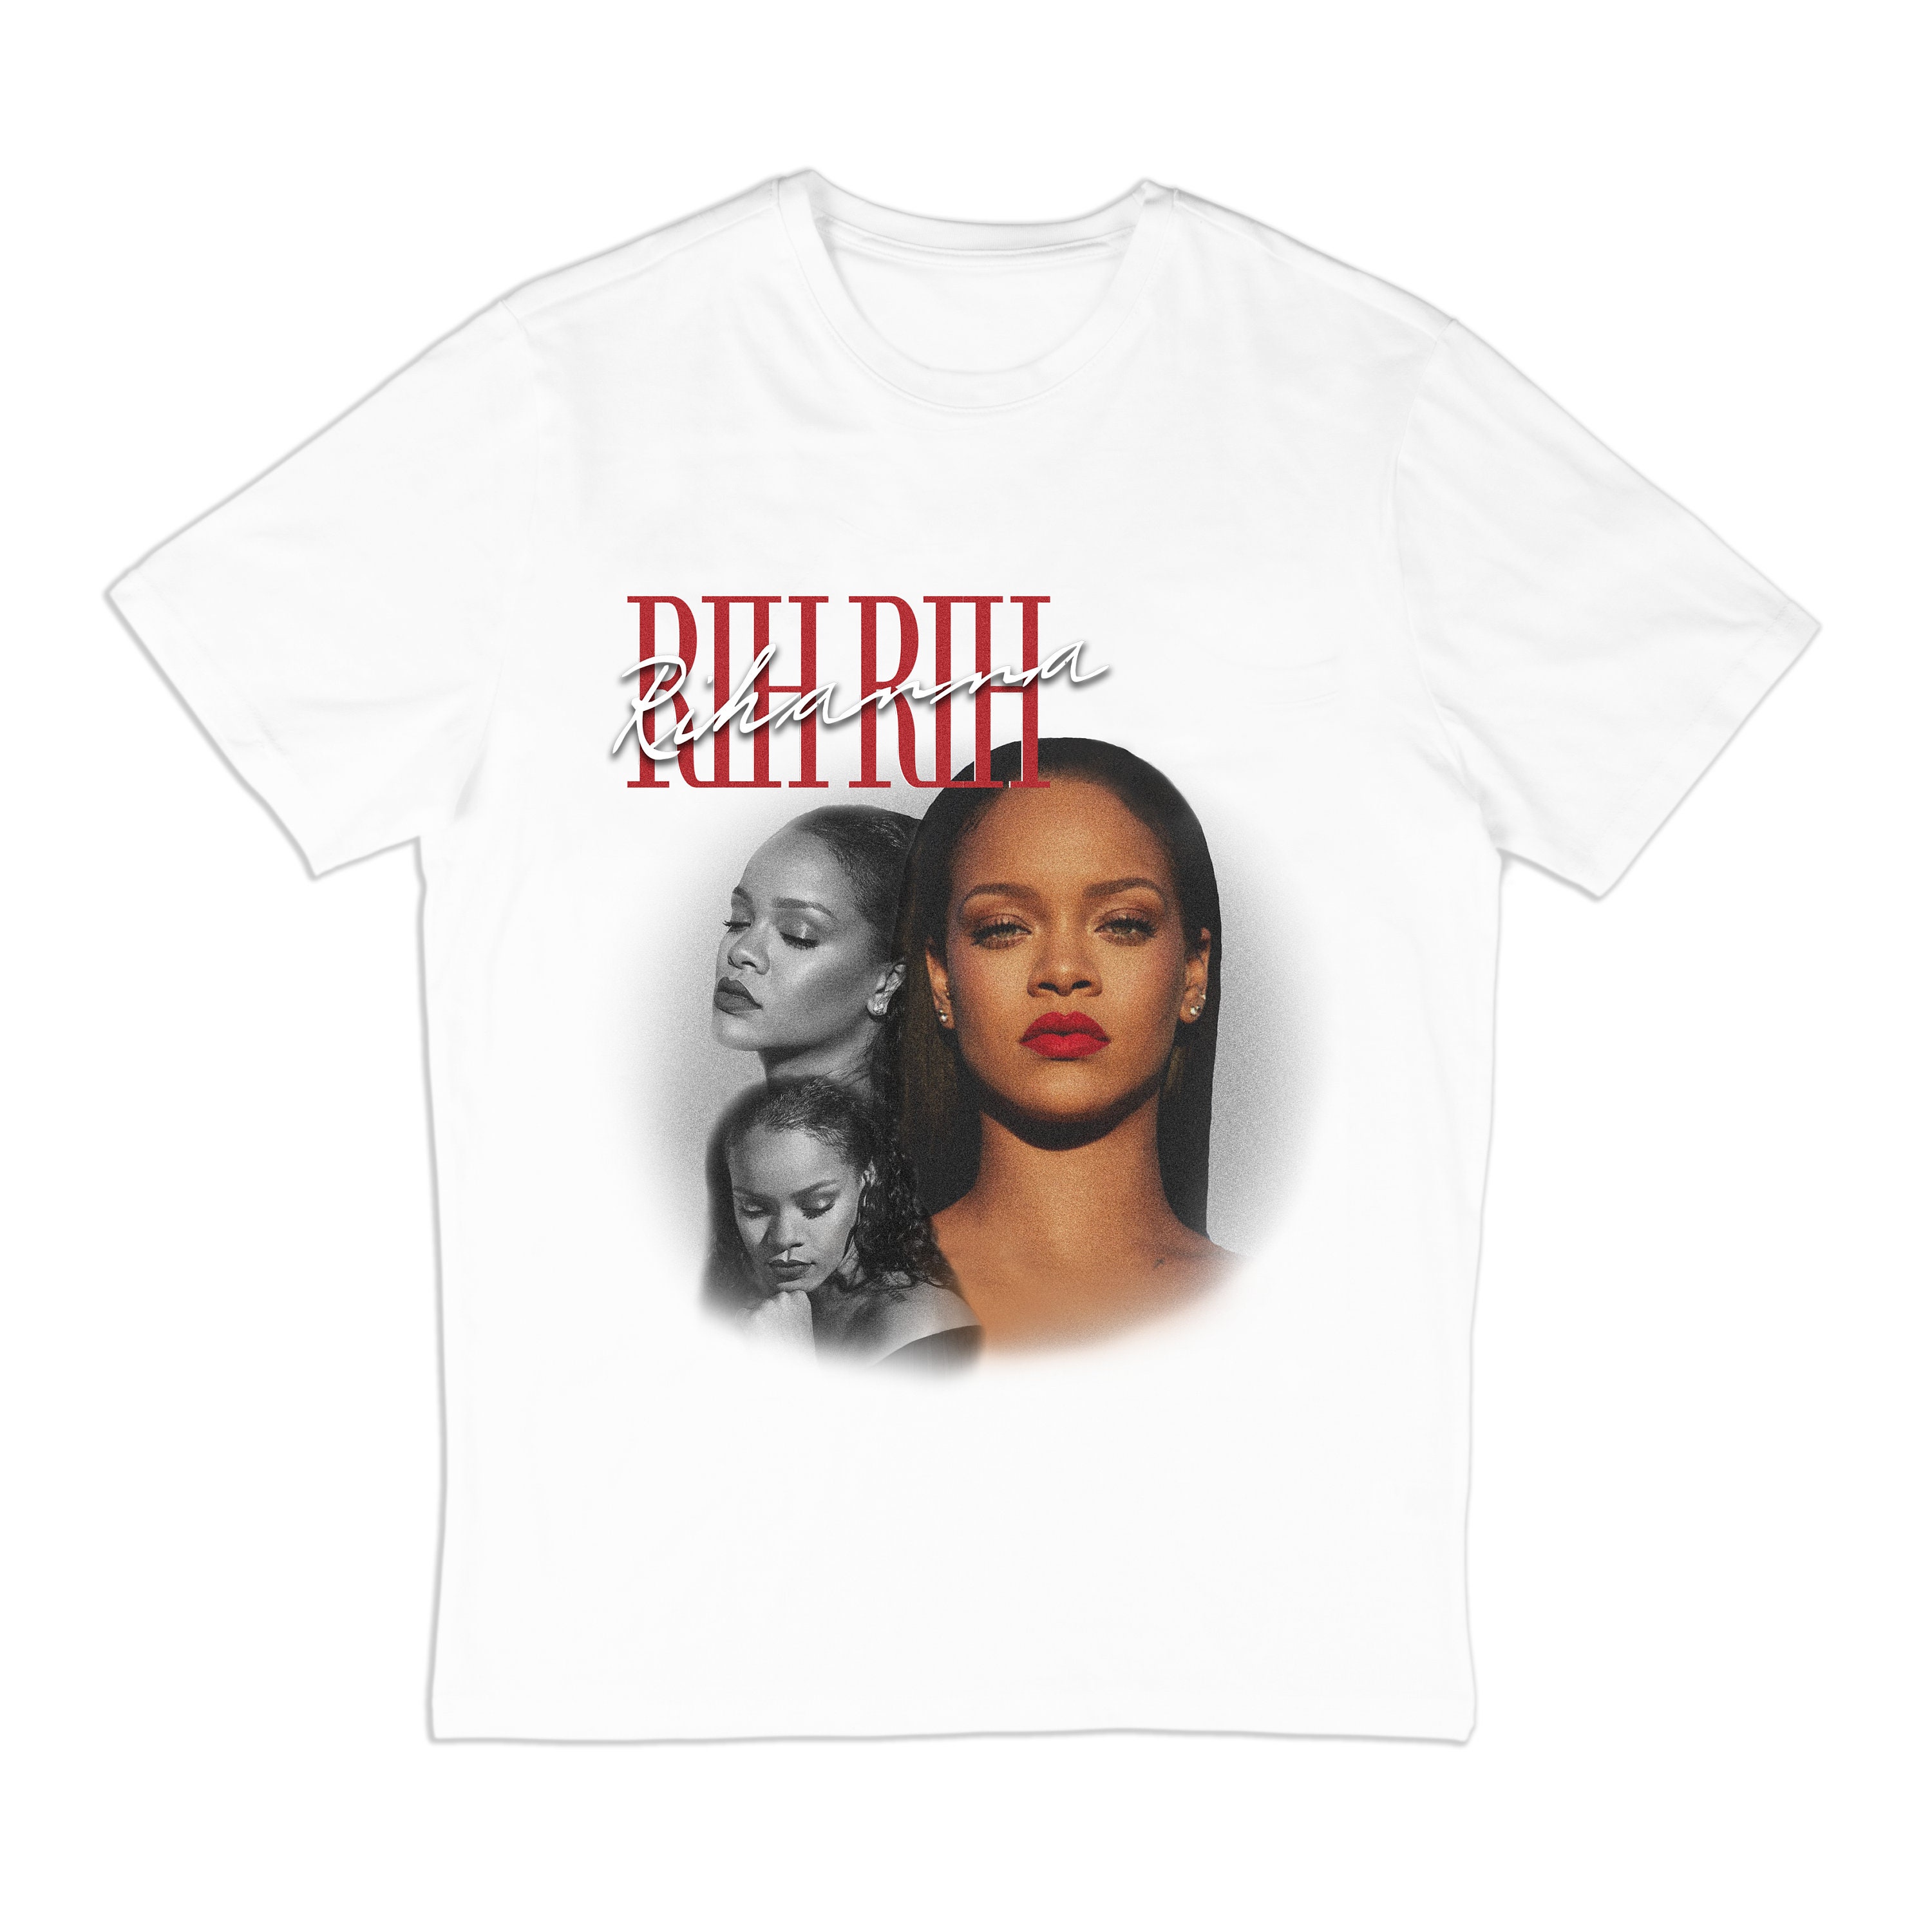 Rihanna Rih Rih Vintage T-Shirt in White | Etsy